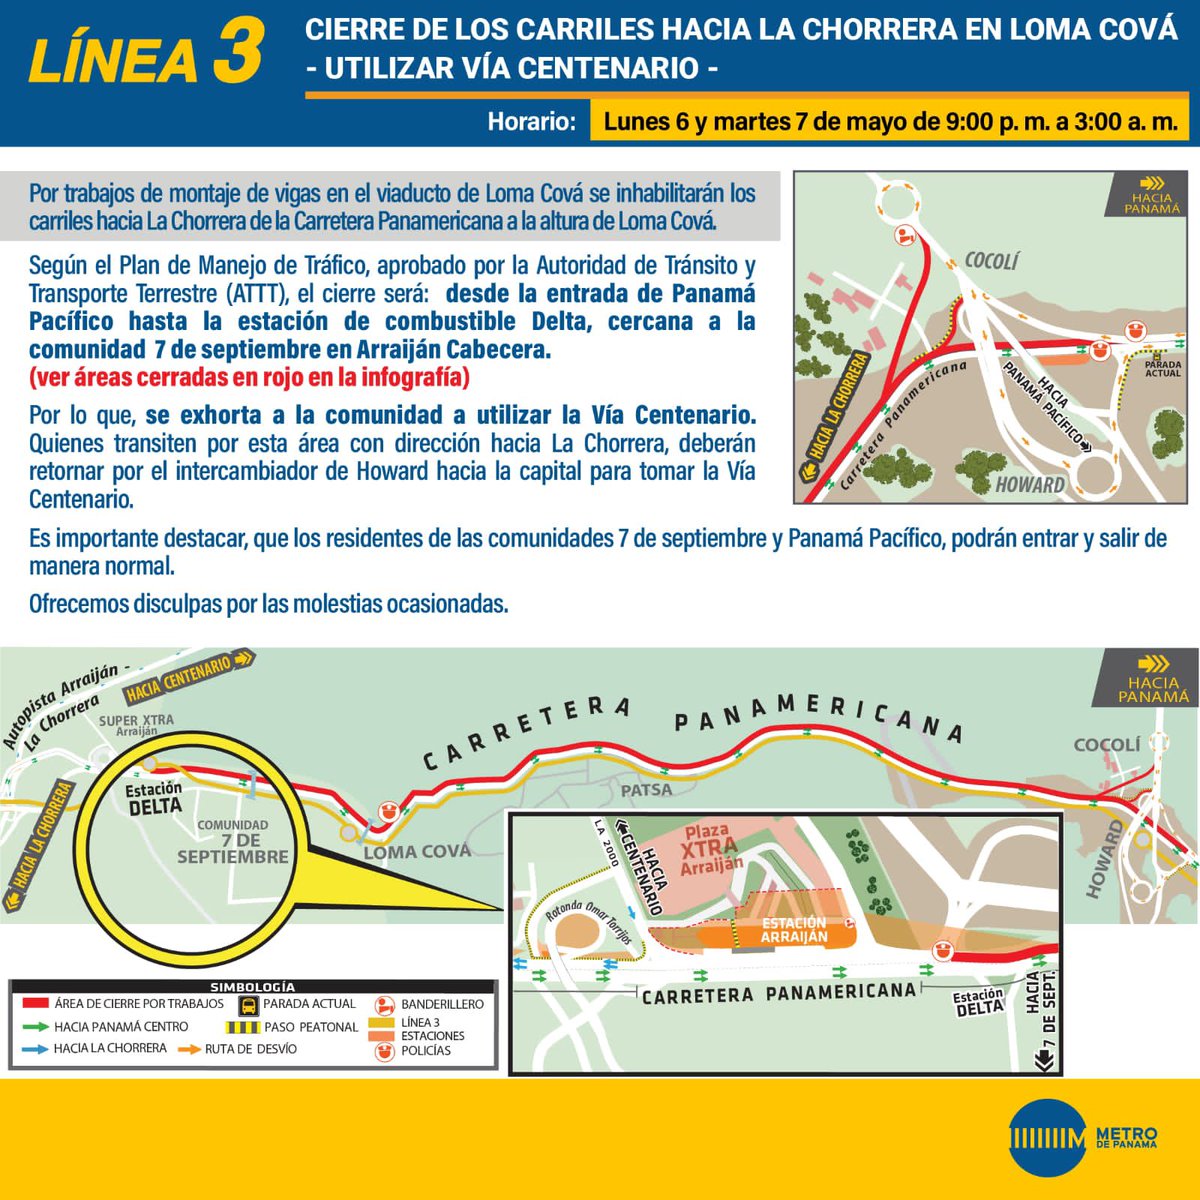 Cierre de los carriles hacia La Chorrera en Loma Cová desde las 9 de la noche de hoy hasta las 3 de la mañana de mañana.